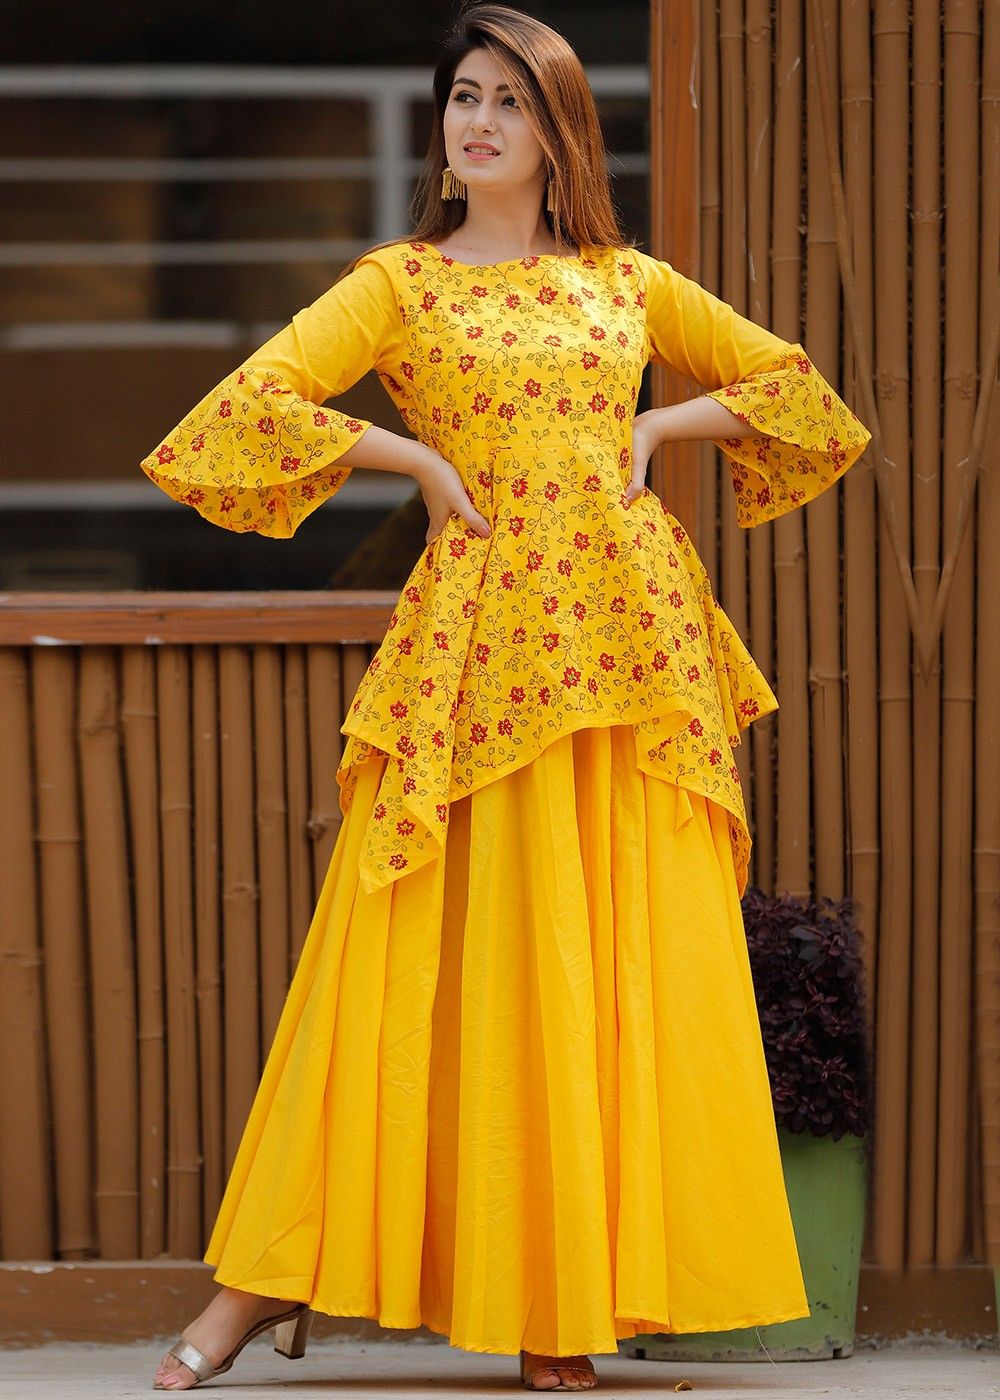 Aggregate more than 81 skirt kurti dress best